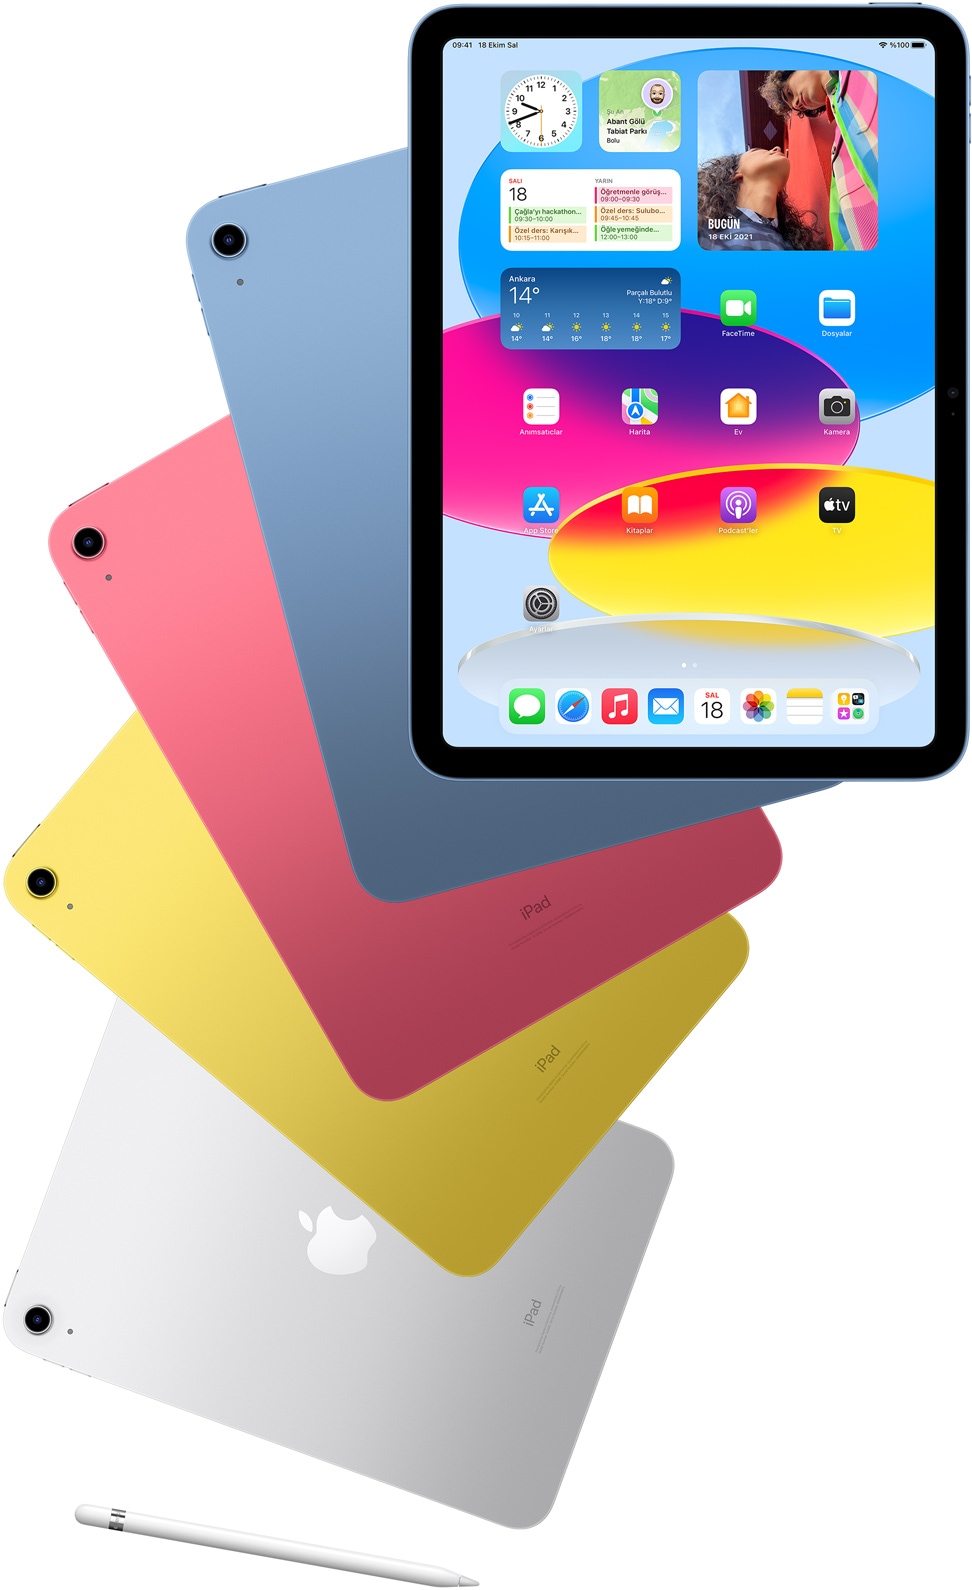 Karşınızda yeniden tasarlanan iPad. Hayatınıza renk katmak için yeniden tasarlanan iPad şimdi daha yetenekli, daha kullanıcı dostu ve daha da eğlenceli. Yeni tam ekran tasarımı, 10.9 inç Liquid Retina ekranı ve dört muhteşem renk seçeneğiyle iPad işlerinizi halletmenin, yaratıcılığınızı konuşturmanın ve bağlantıda kalmanın güçlü bir yolunu sunuyor.1 Ve yalnızca iPad için tasarlanan vazgeçilmez aksesuarlarla, yapmayı sevdiğiniz her şey için sınırsız olasılıklar sizi bekliyor.